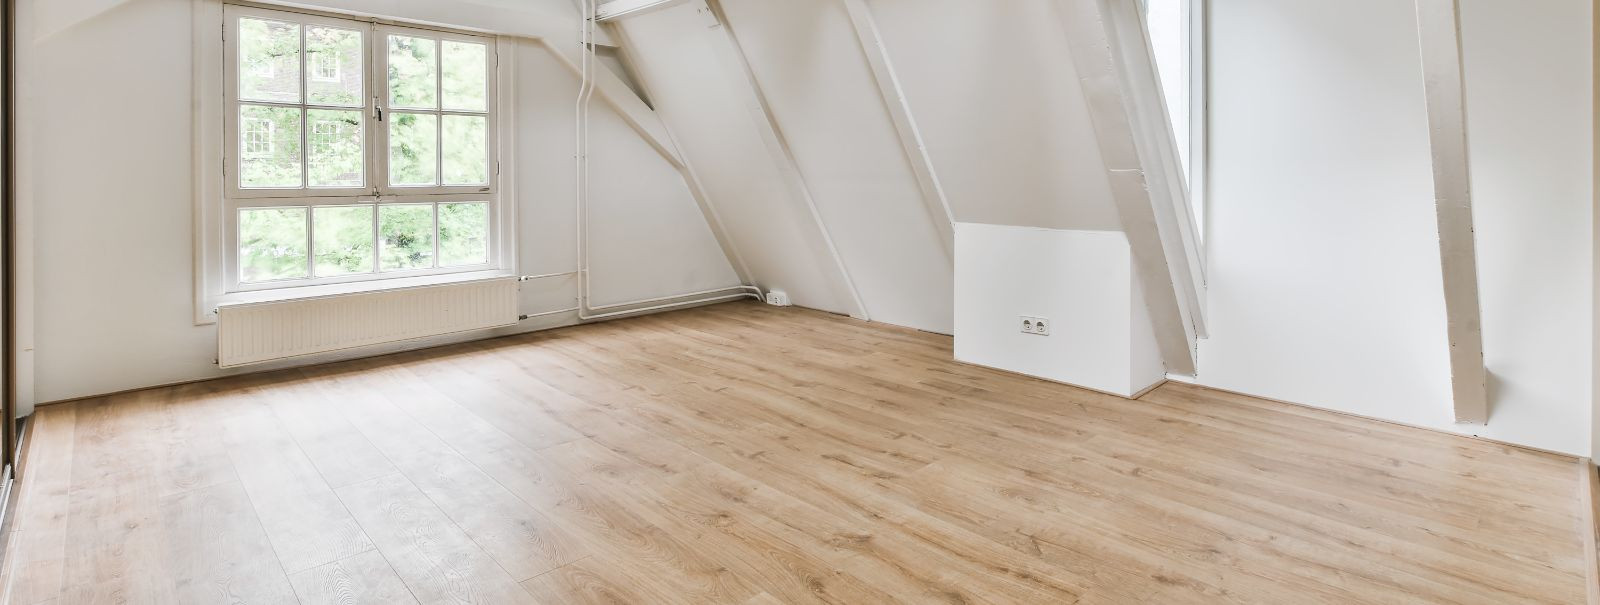 Puitpõrandad on ajatu omadus, mis lisavad igale ruumile soojust ja elegantsi. Siiski on vaja nende ilu ja vastupidavust säilitamiseks korralikku hooldust. Tunni